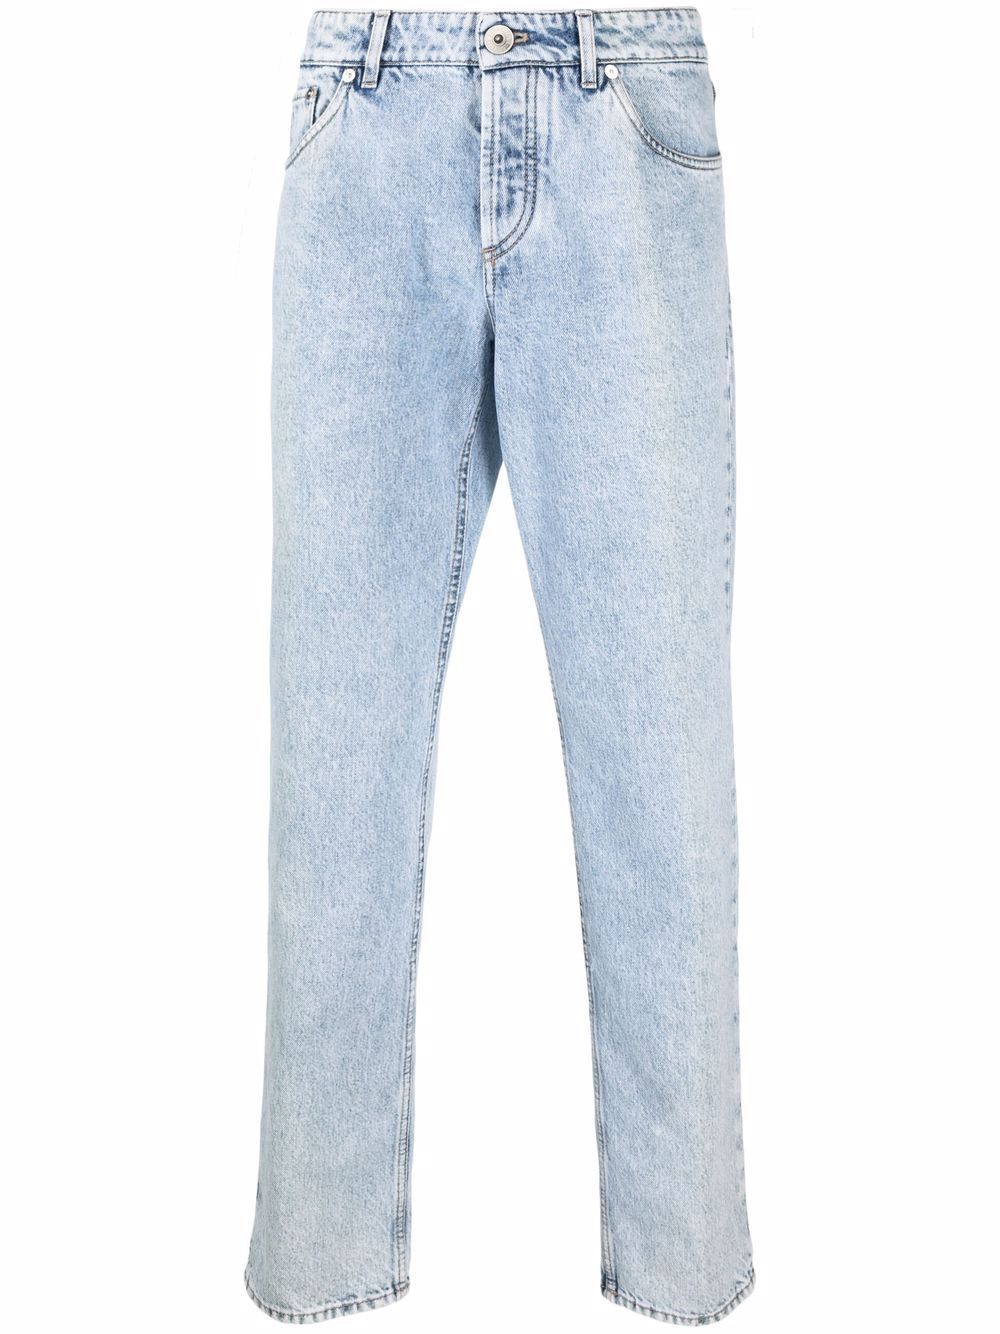 фото Brunello cucinelli прямые джинсы с эффектом потертости